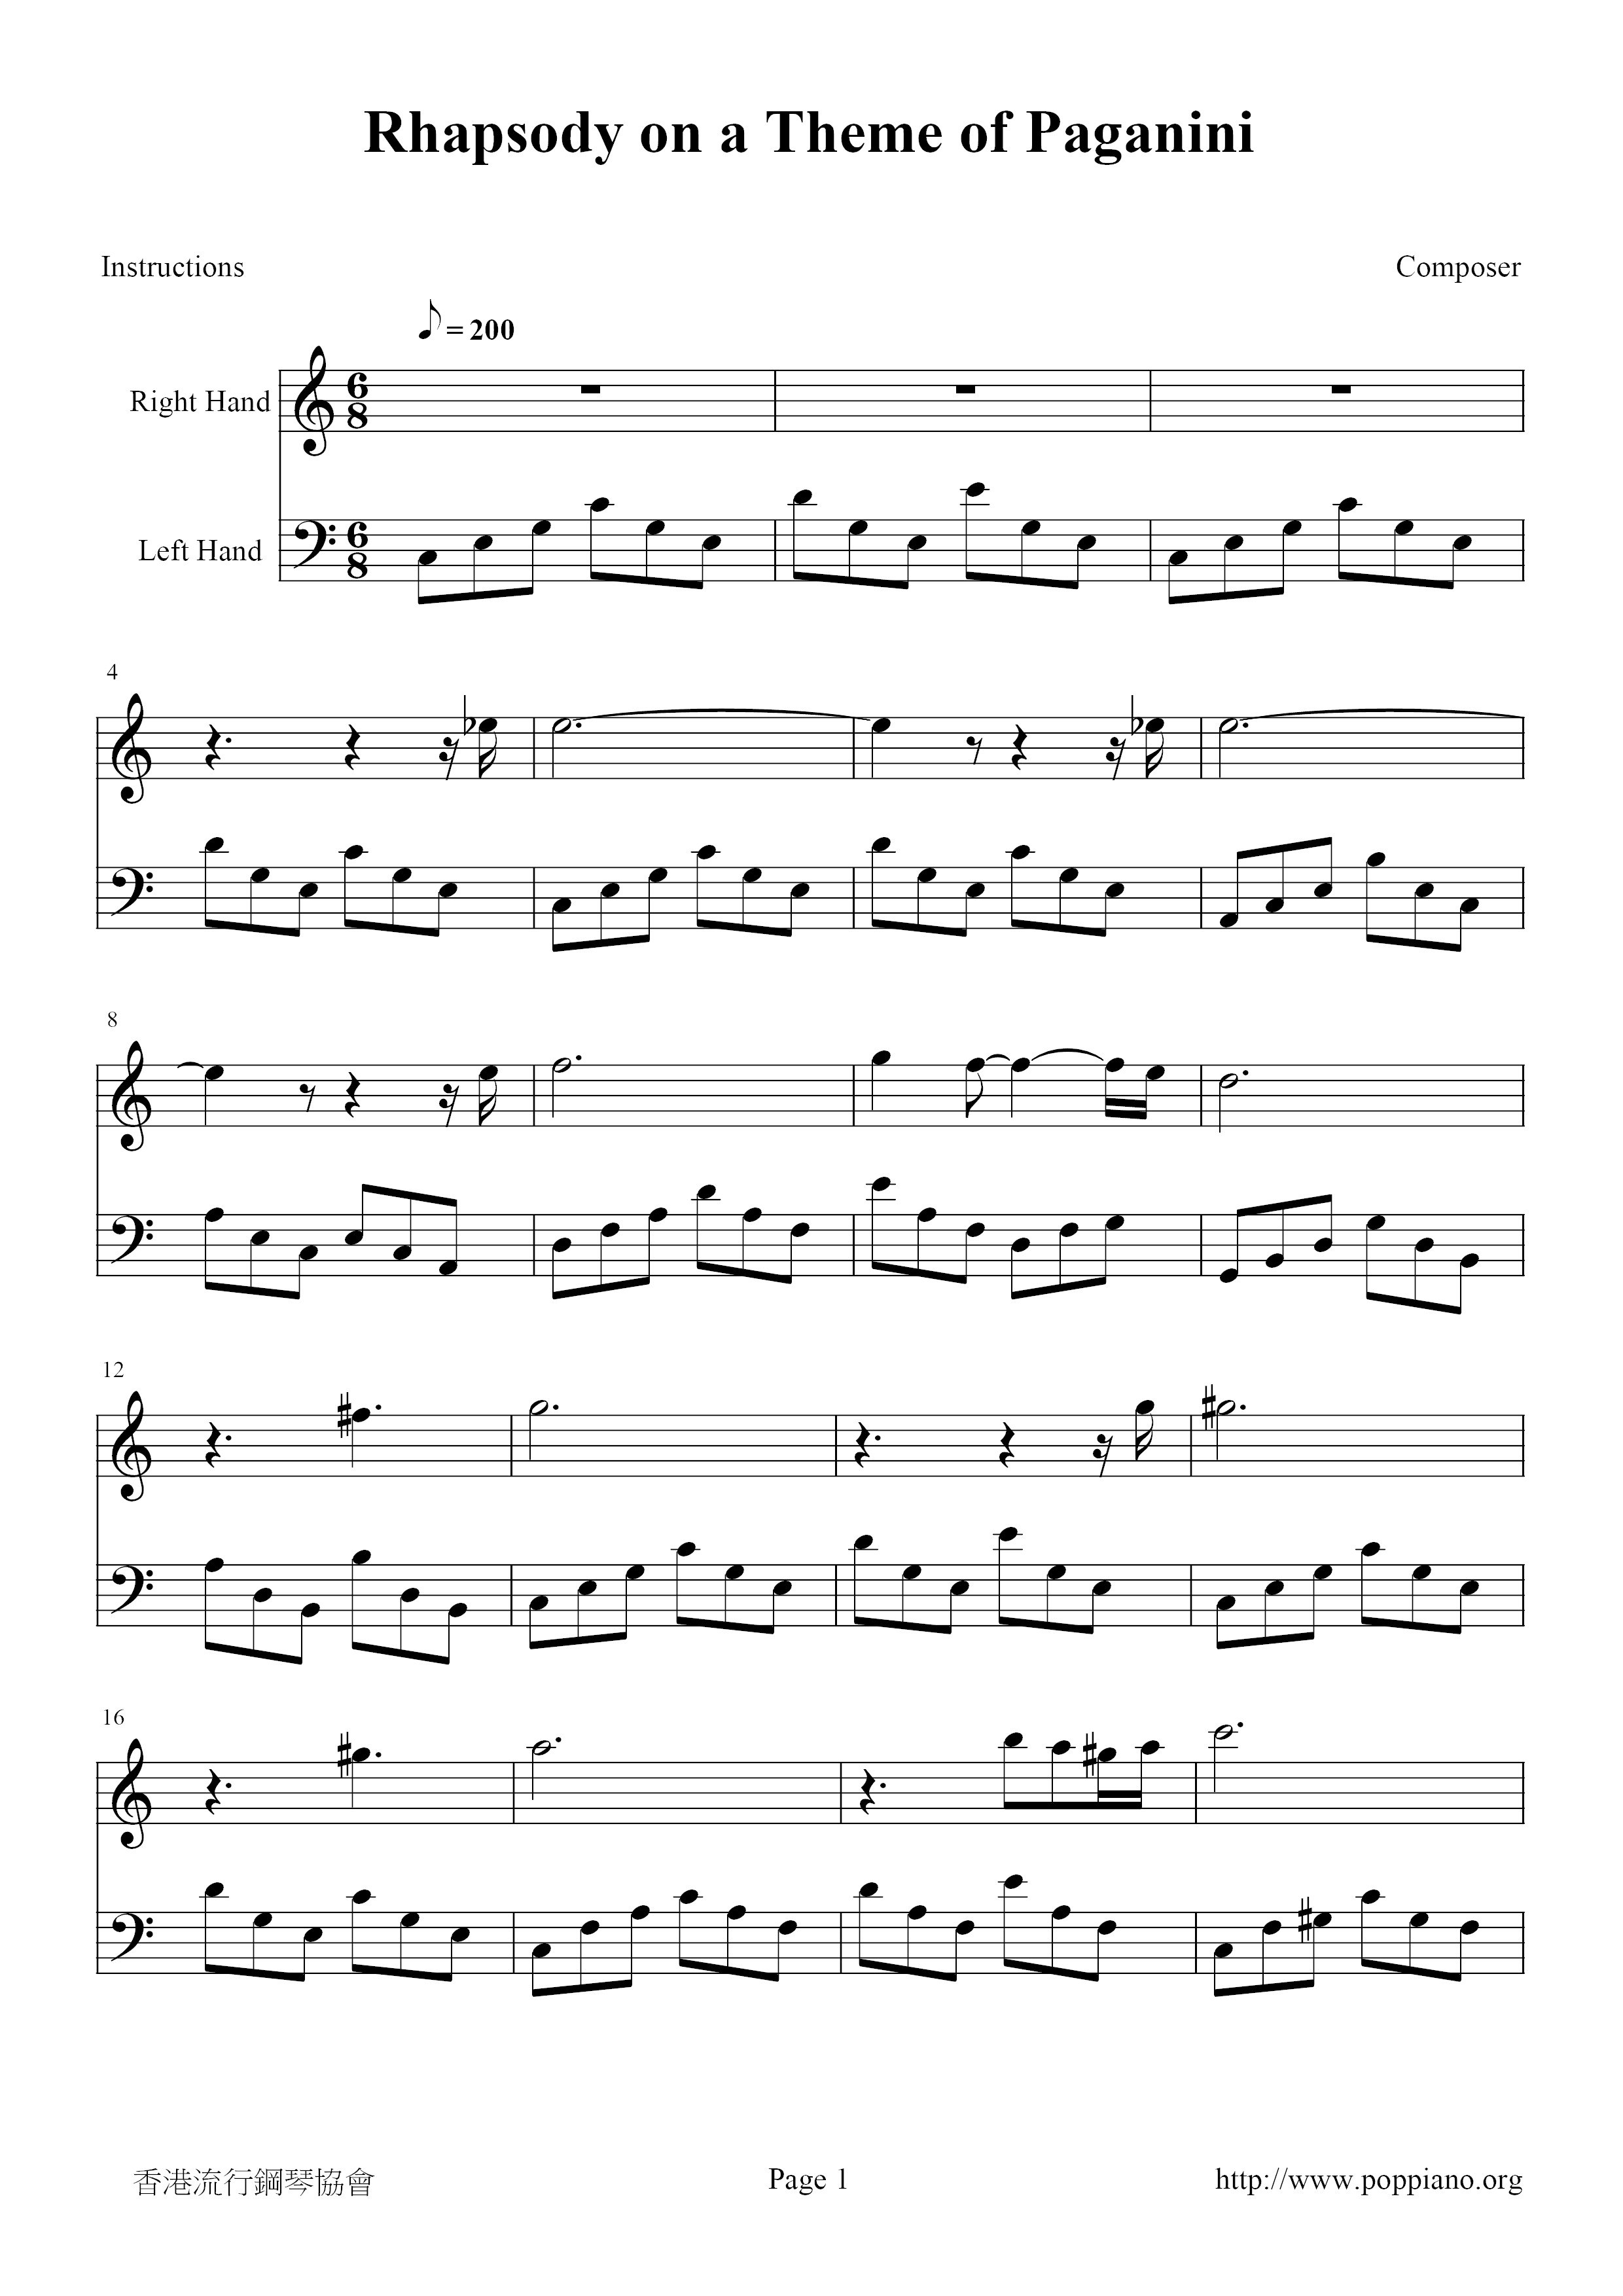 Rhapsody on a Theme of Paganini Score